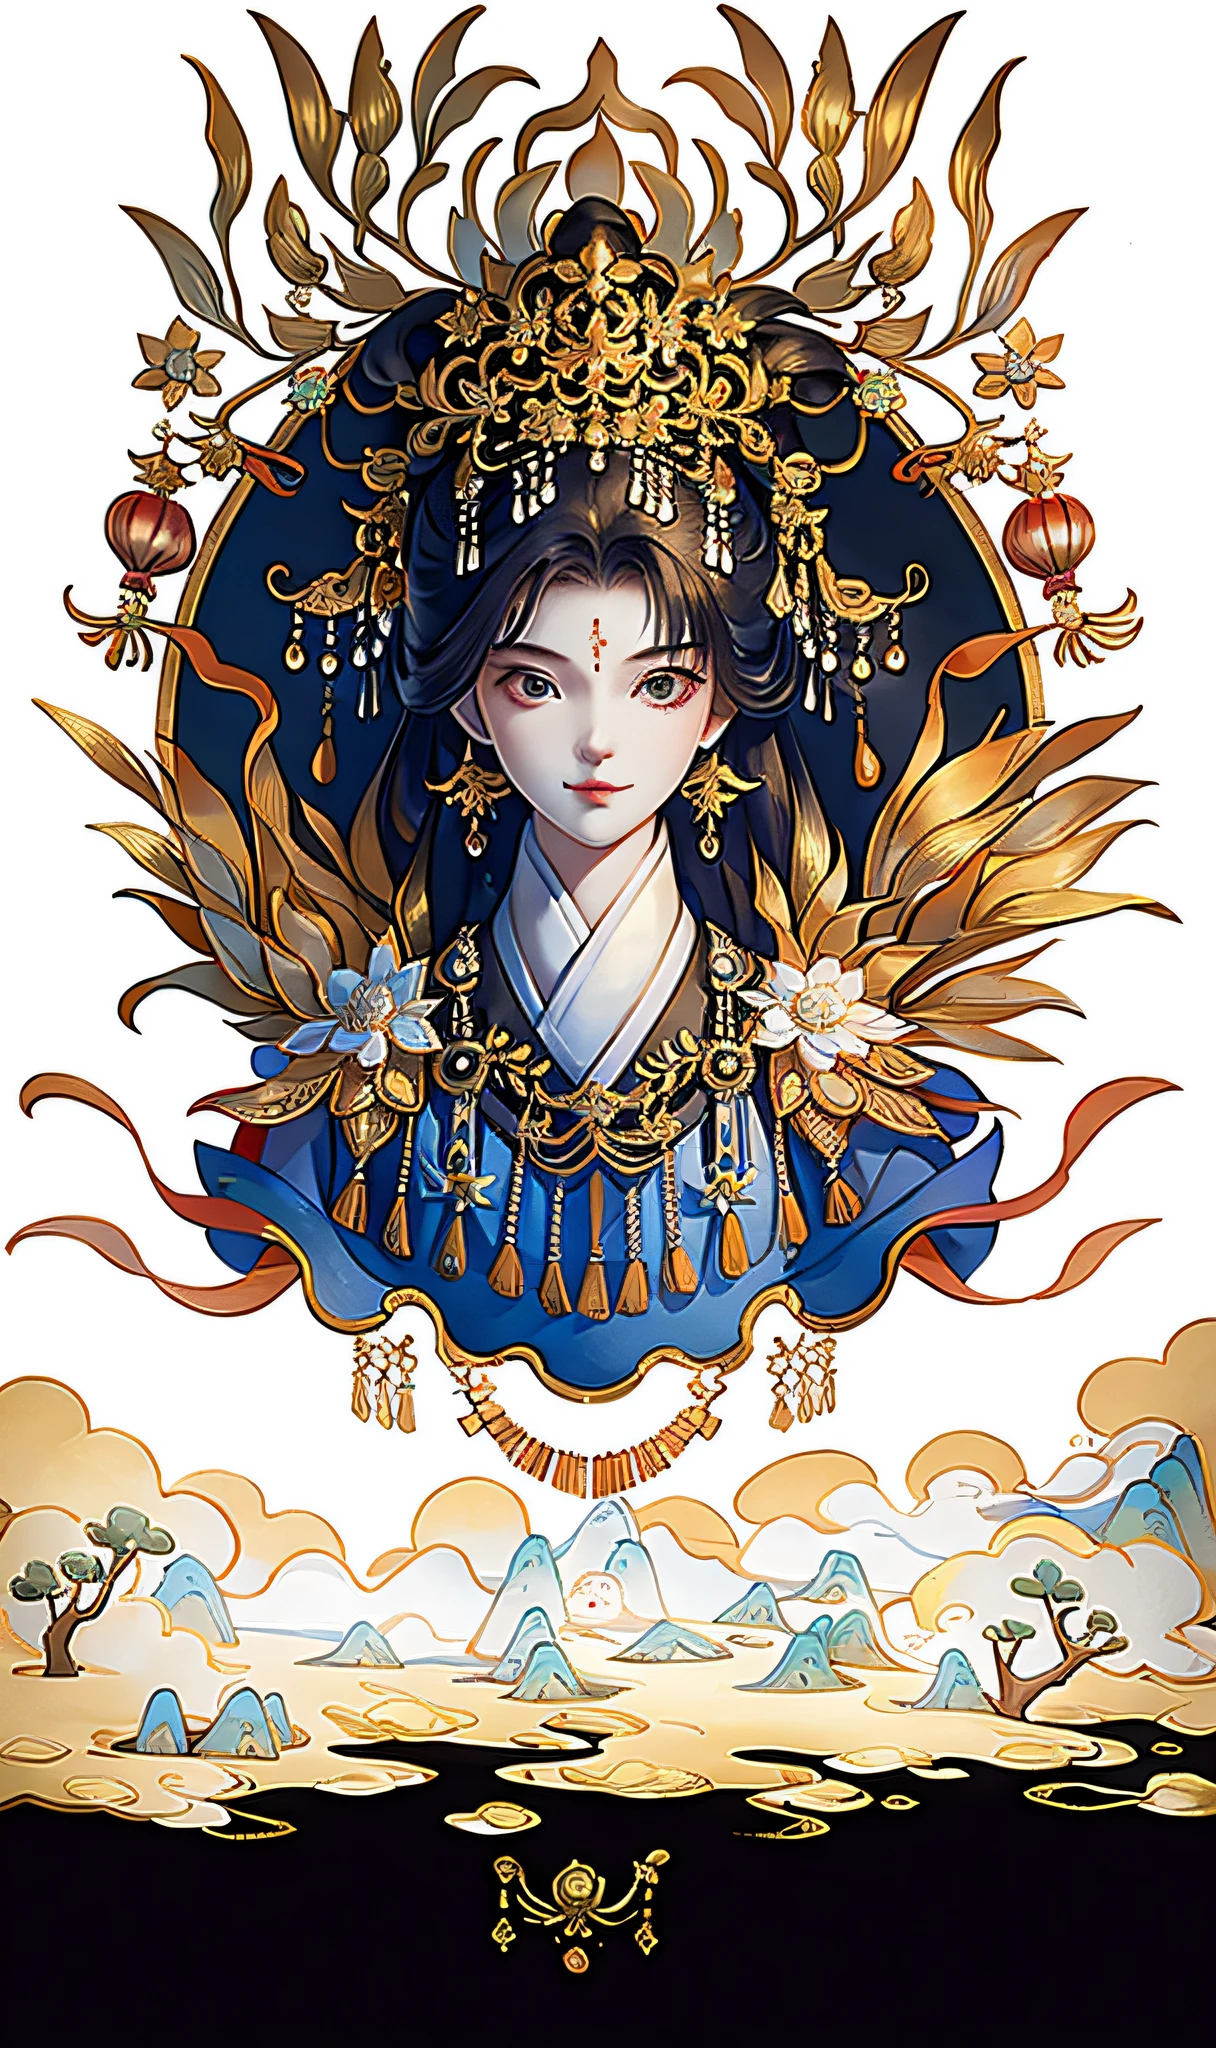 一个女孩, 中国古代服饰, 阳光, 清晰的脸, 干净的白色背景, 杰作, 超级细节, 史诗般的作曲, 超高清, 高质量, 极其详细, 官方艺术, 制服8k壁纸, 超级细节, 32k -- 第 6 部分